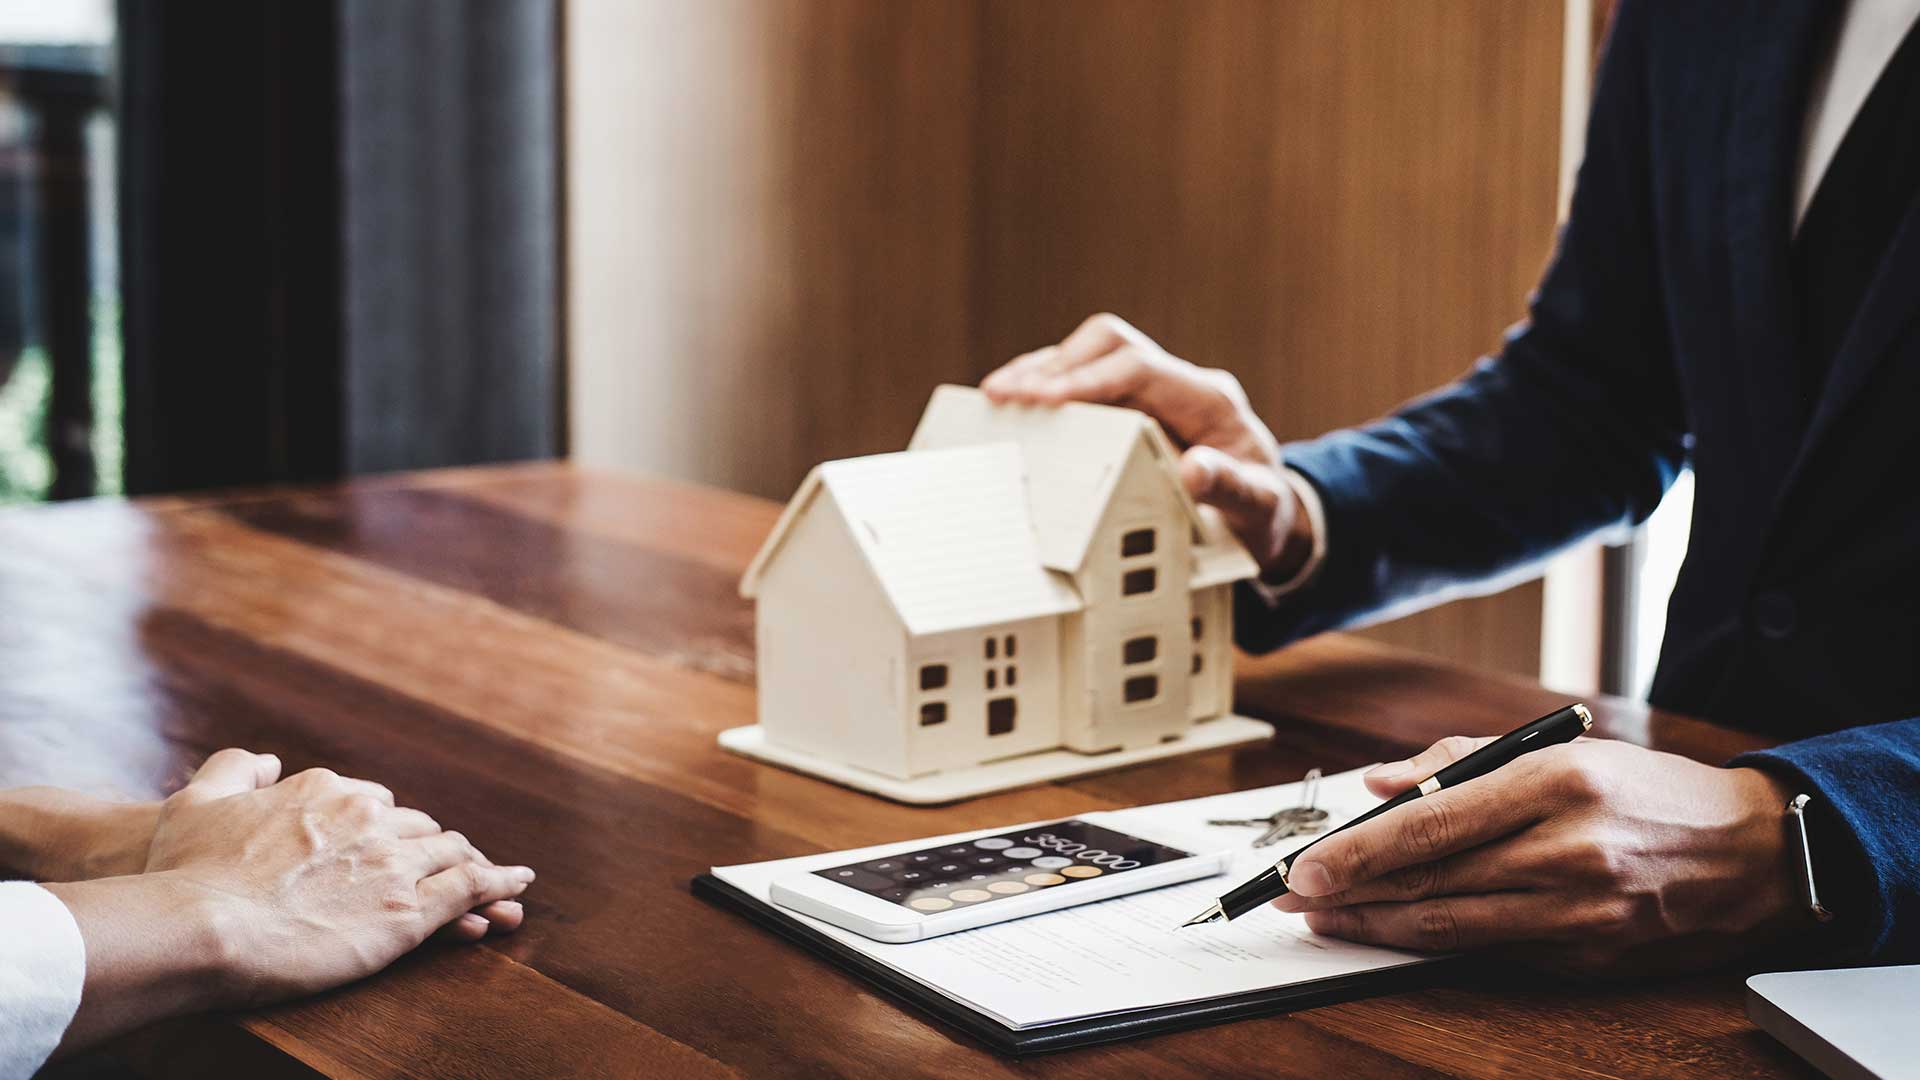 doradca kredytowy wyjaśnia klientowi warunki kredytu hipotecznego trzymając w jednej ręce długopis a w drugiej mały domek -  w 2023